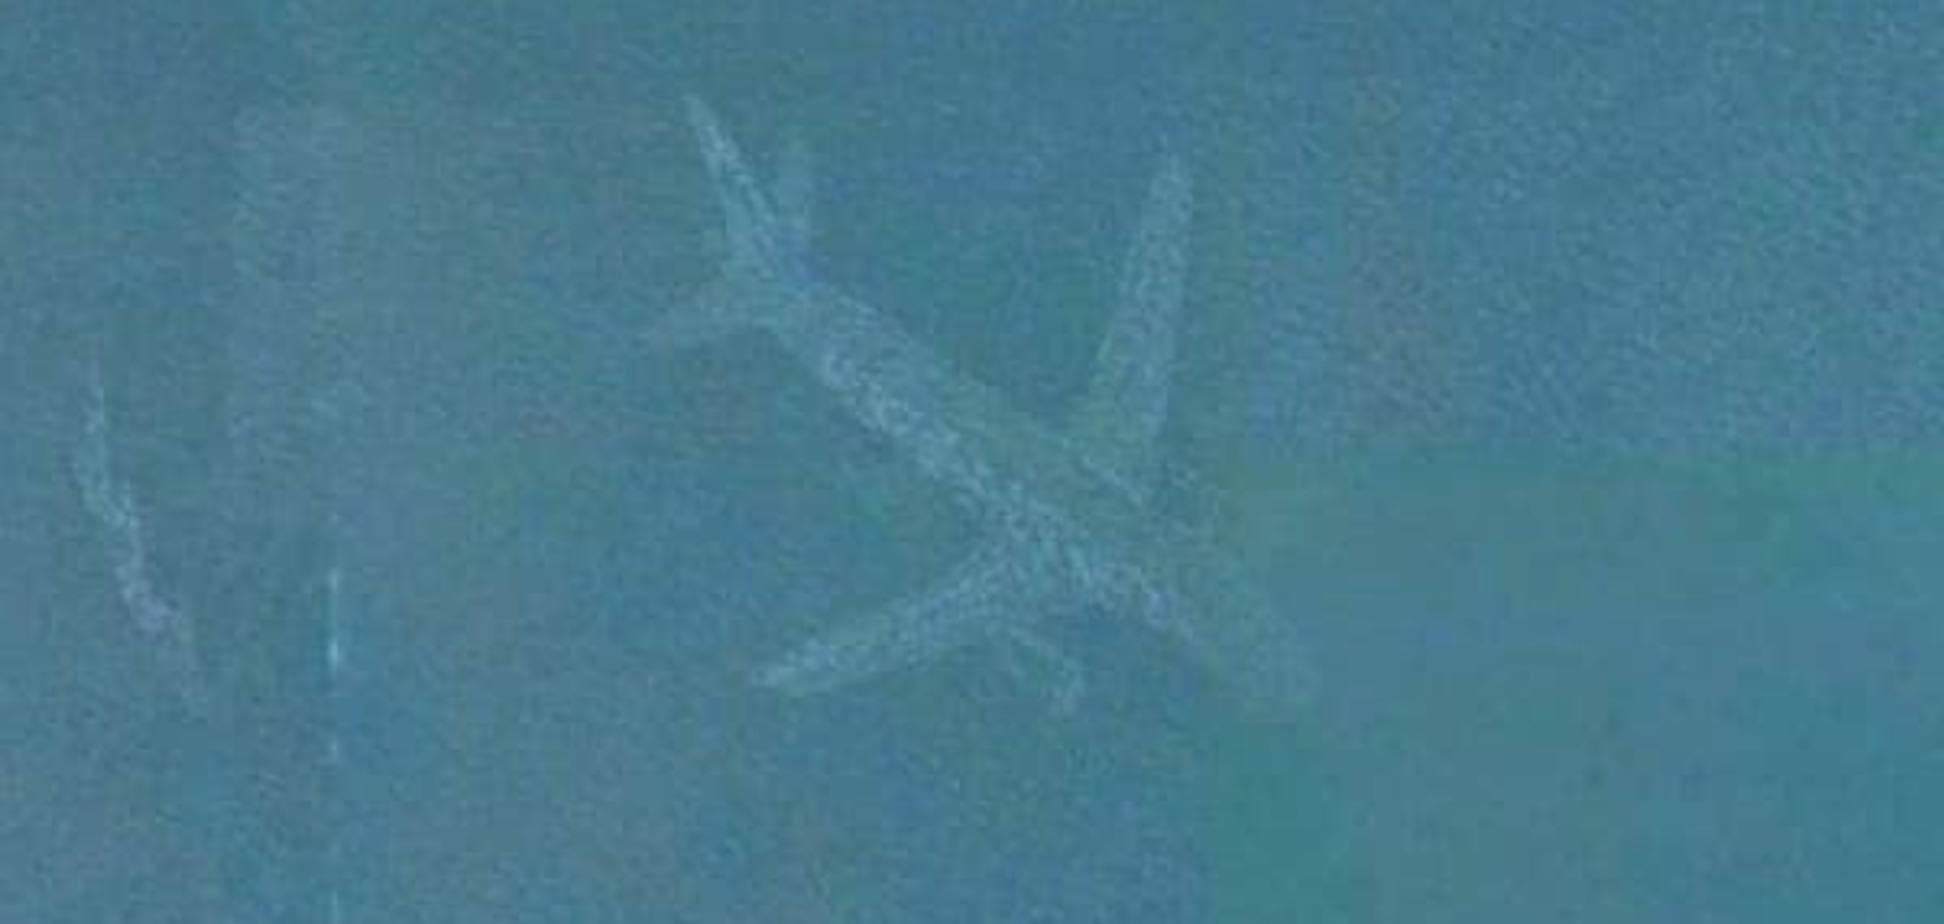 В Google розкрили таємницю літака-примари: опубліковано фото